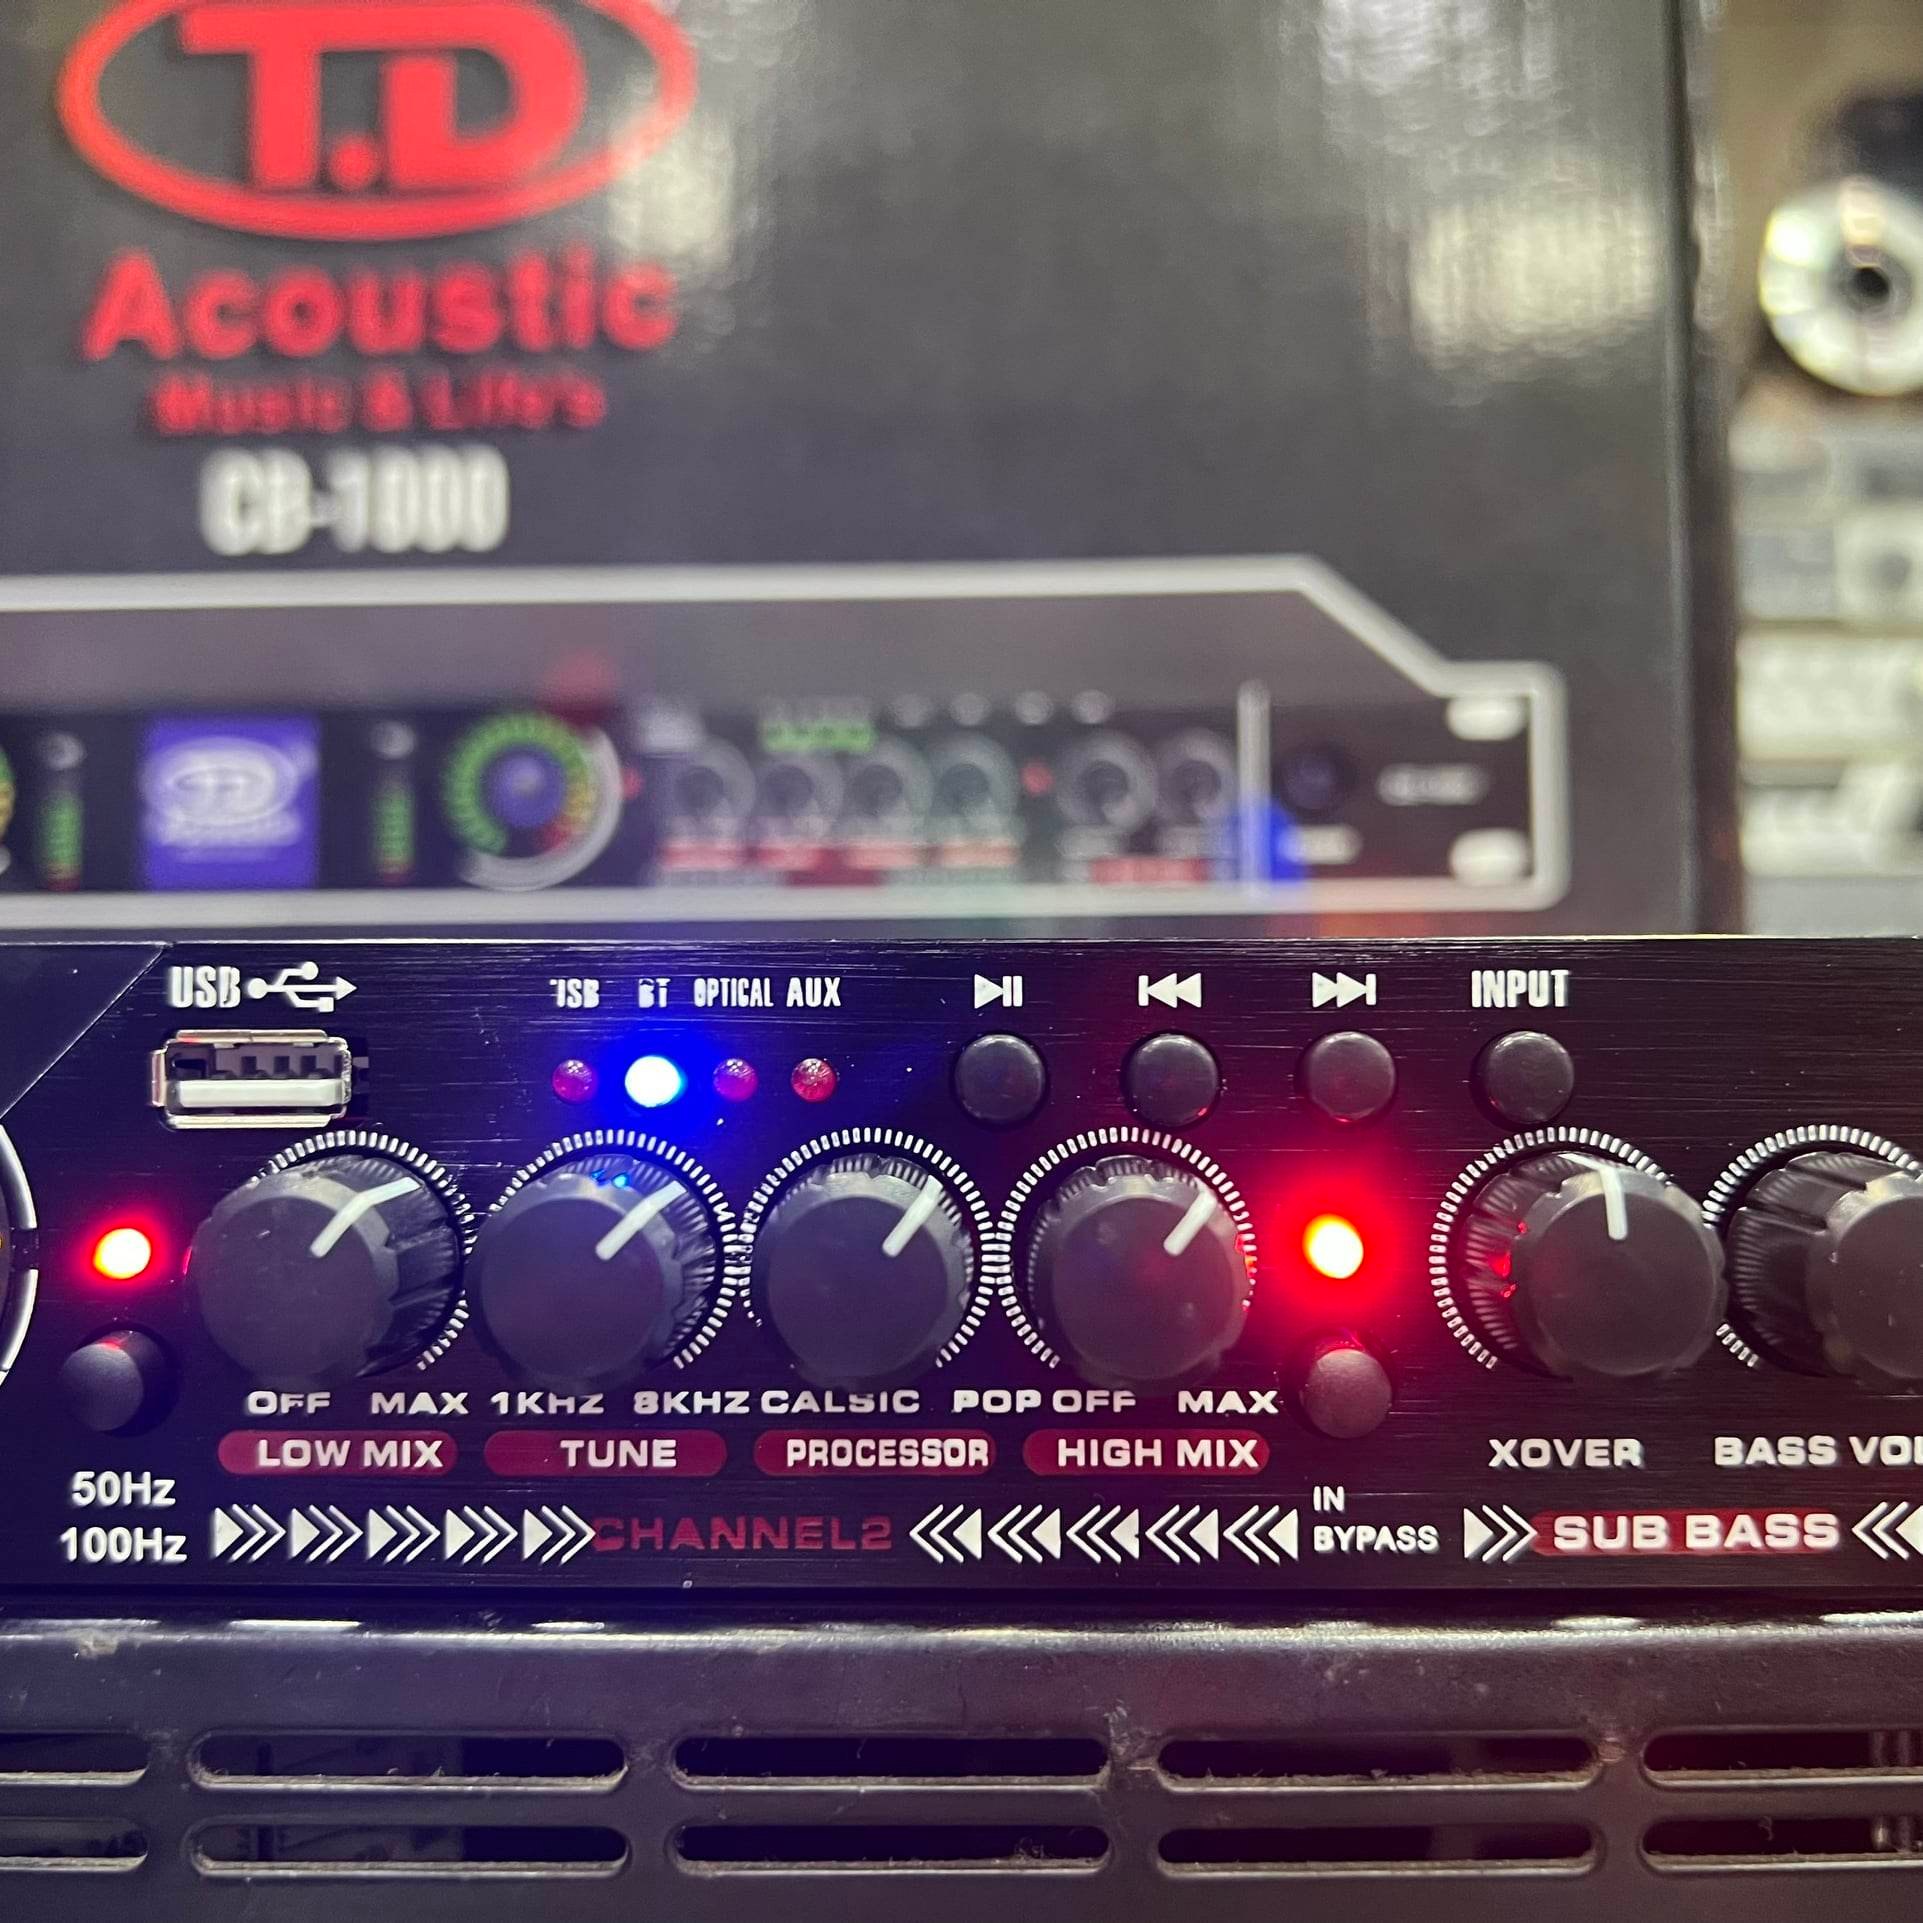 Nâng tiếng TD Acoustic CB-1000: Hàng loại 1, Có Bluetooth, Cổng quang, Tiếng hay, Tặng kèm bộ dây Canon kết nối